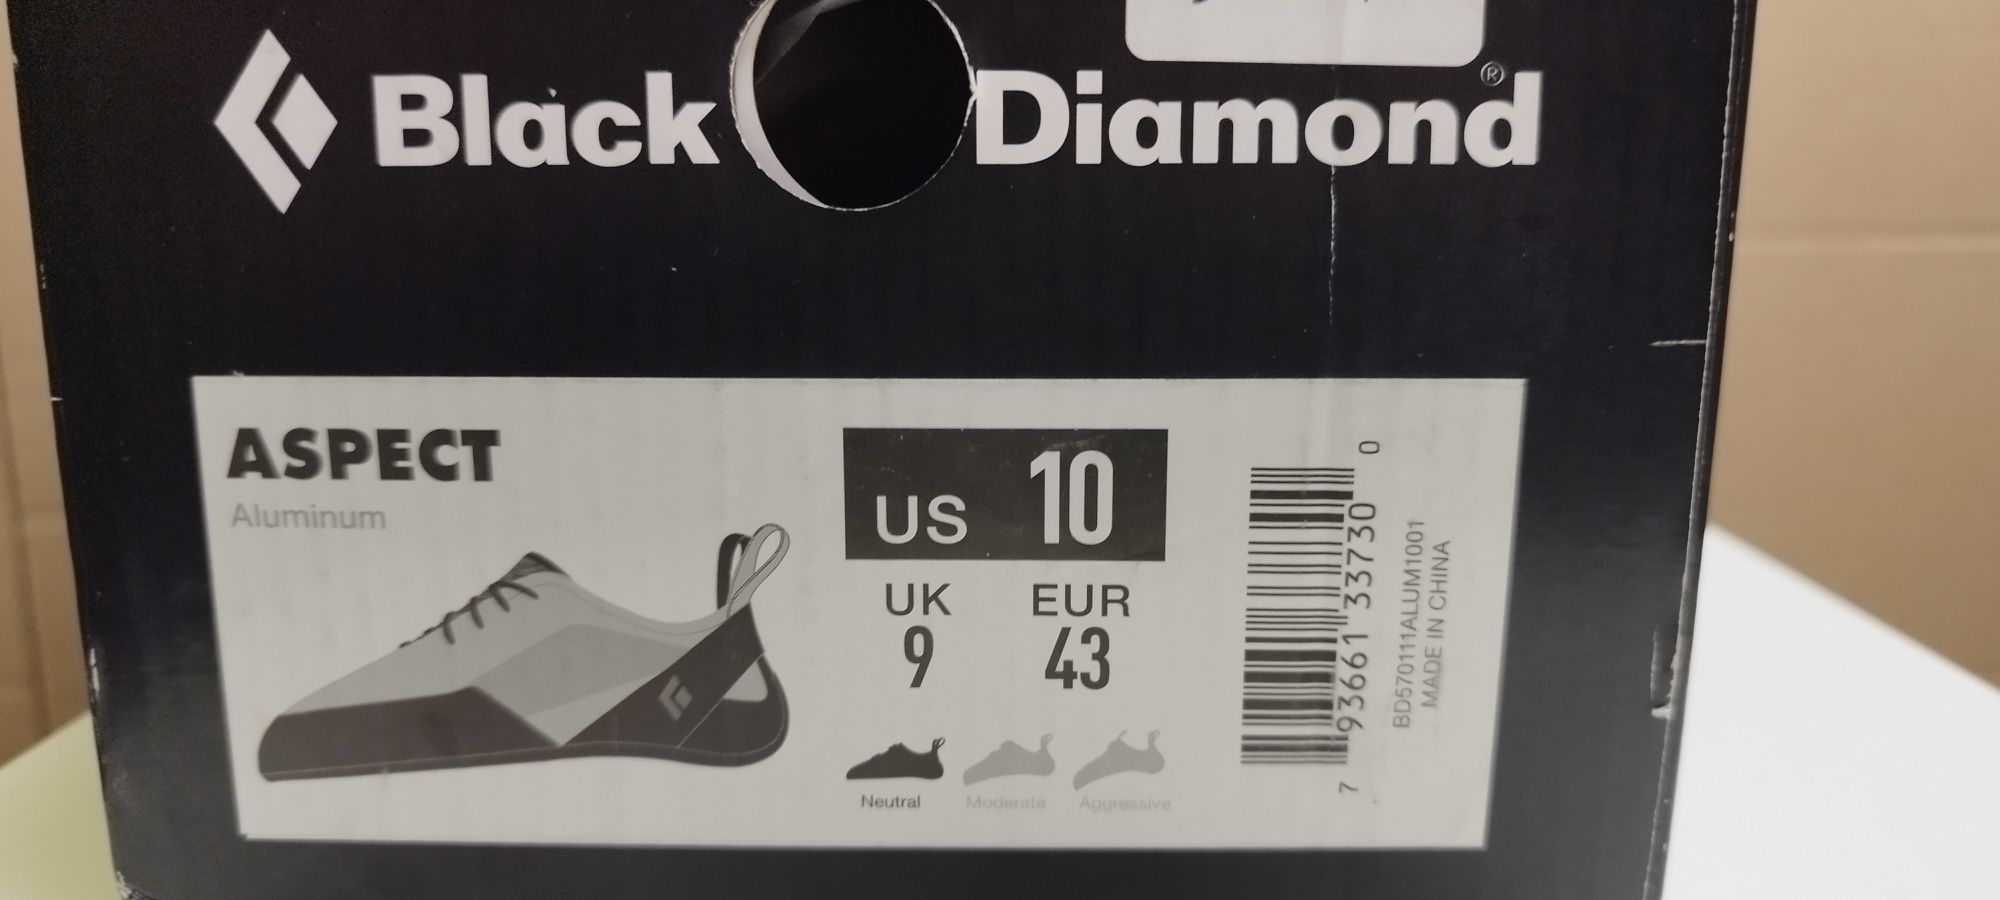 Nowe buty wspinaczkowe Black Diamond Aspect rozmiar 43